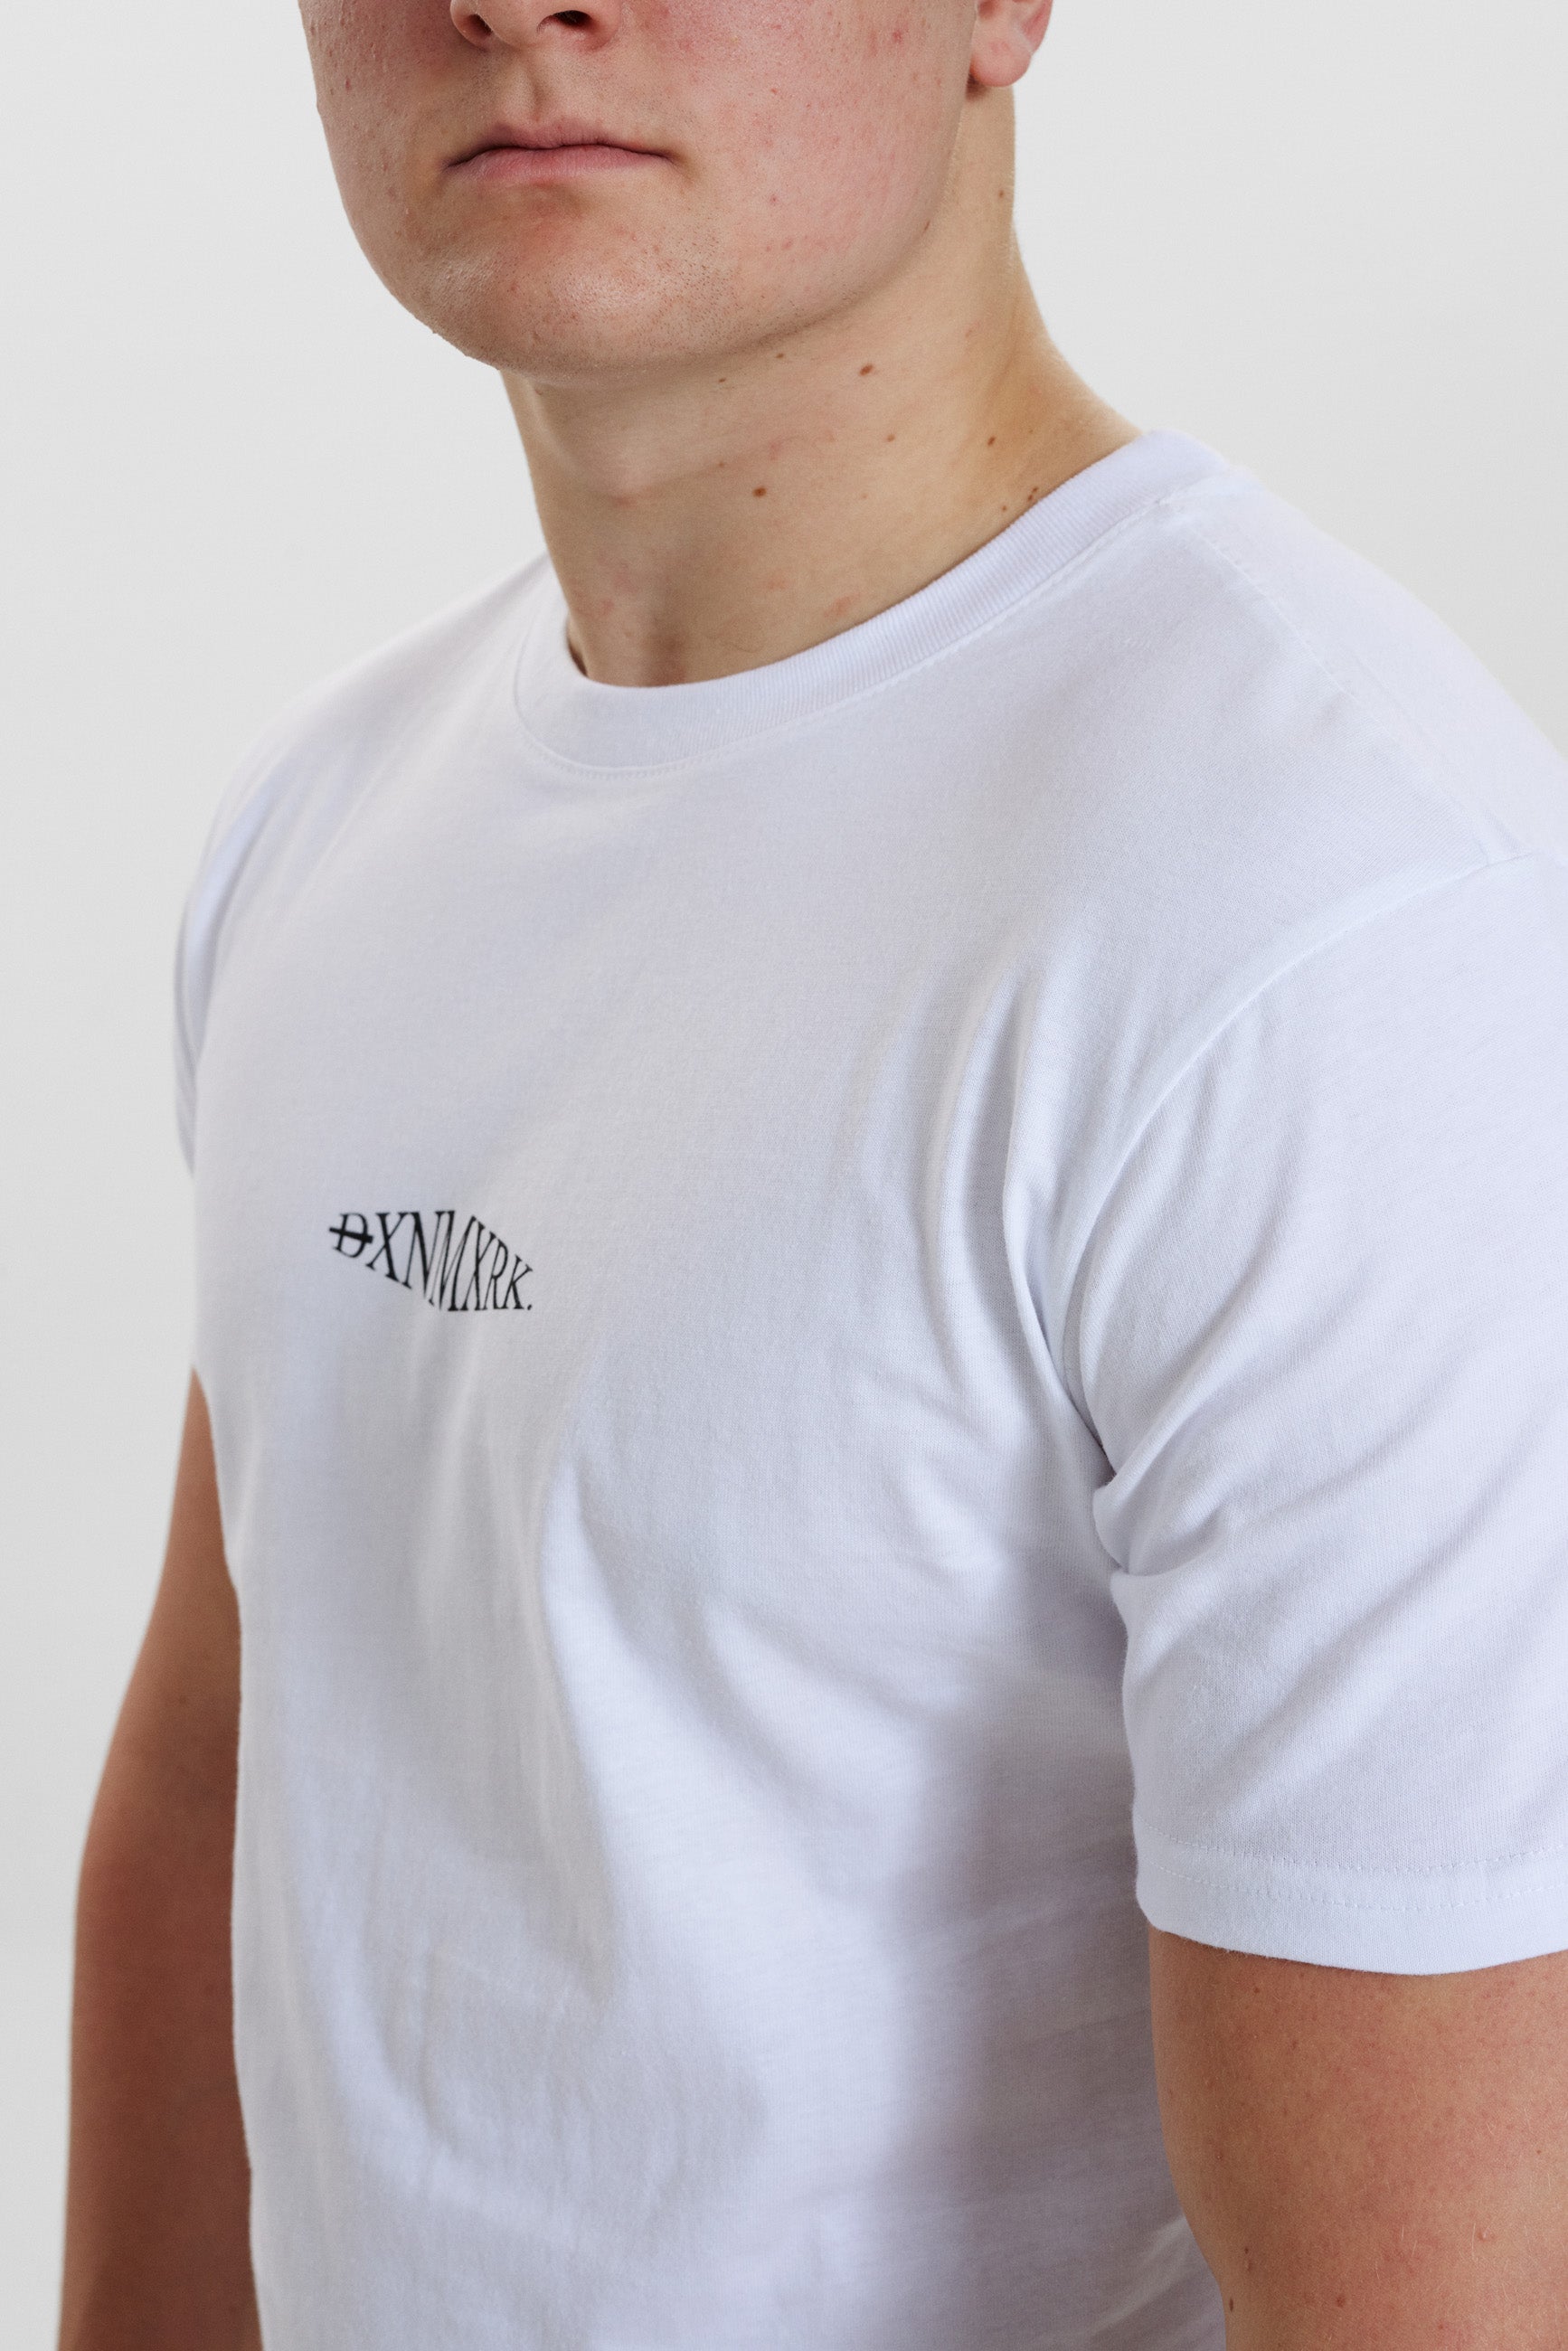 DXNMXRK. DX-Arne T-shirt White